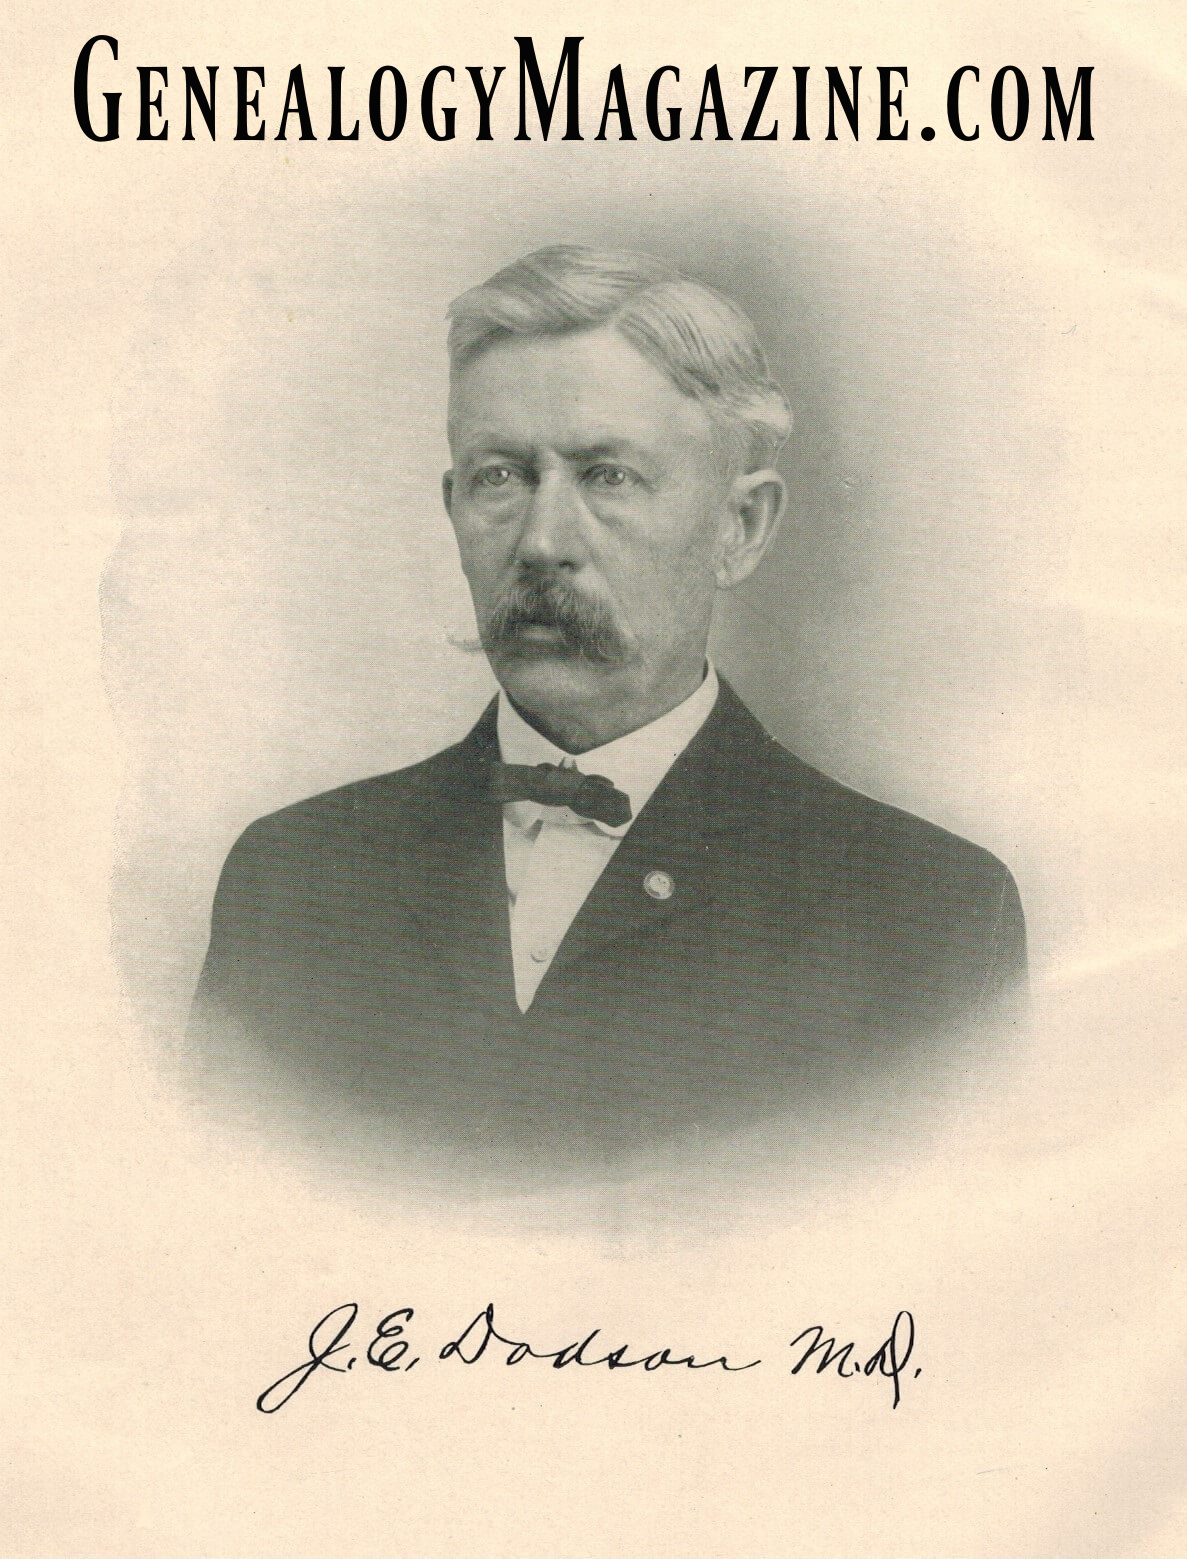 Dr. James E. Dodson picture